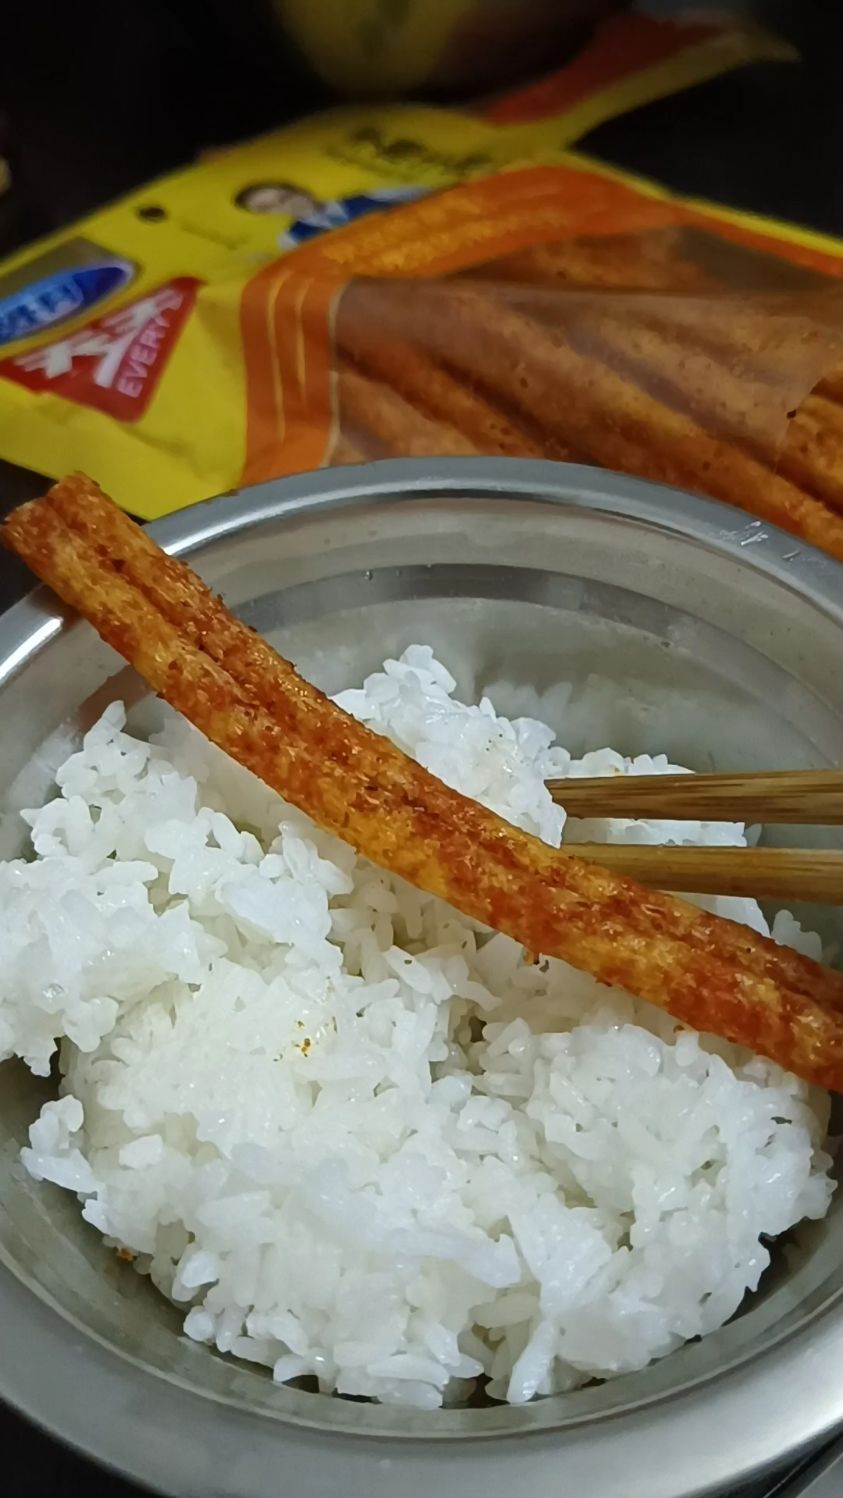 米饭自制辣条图片